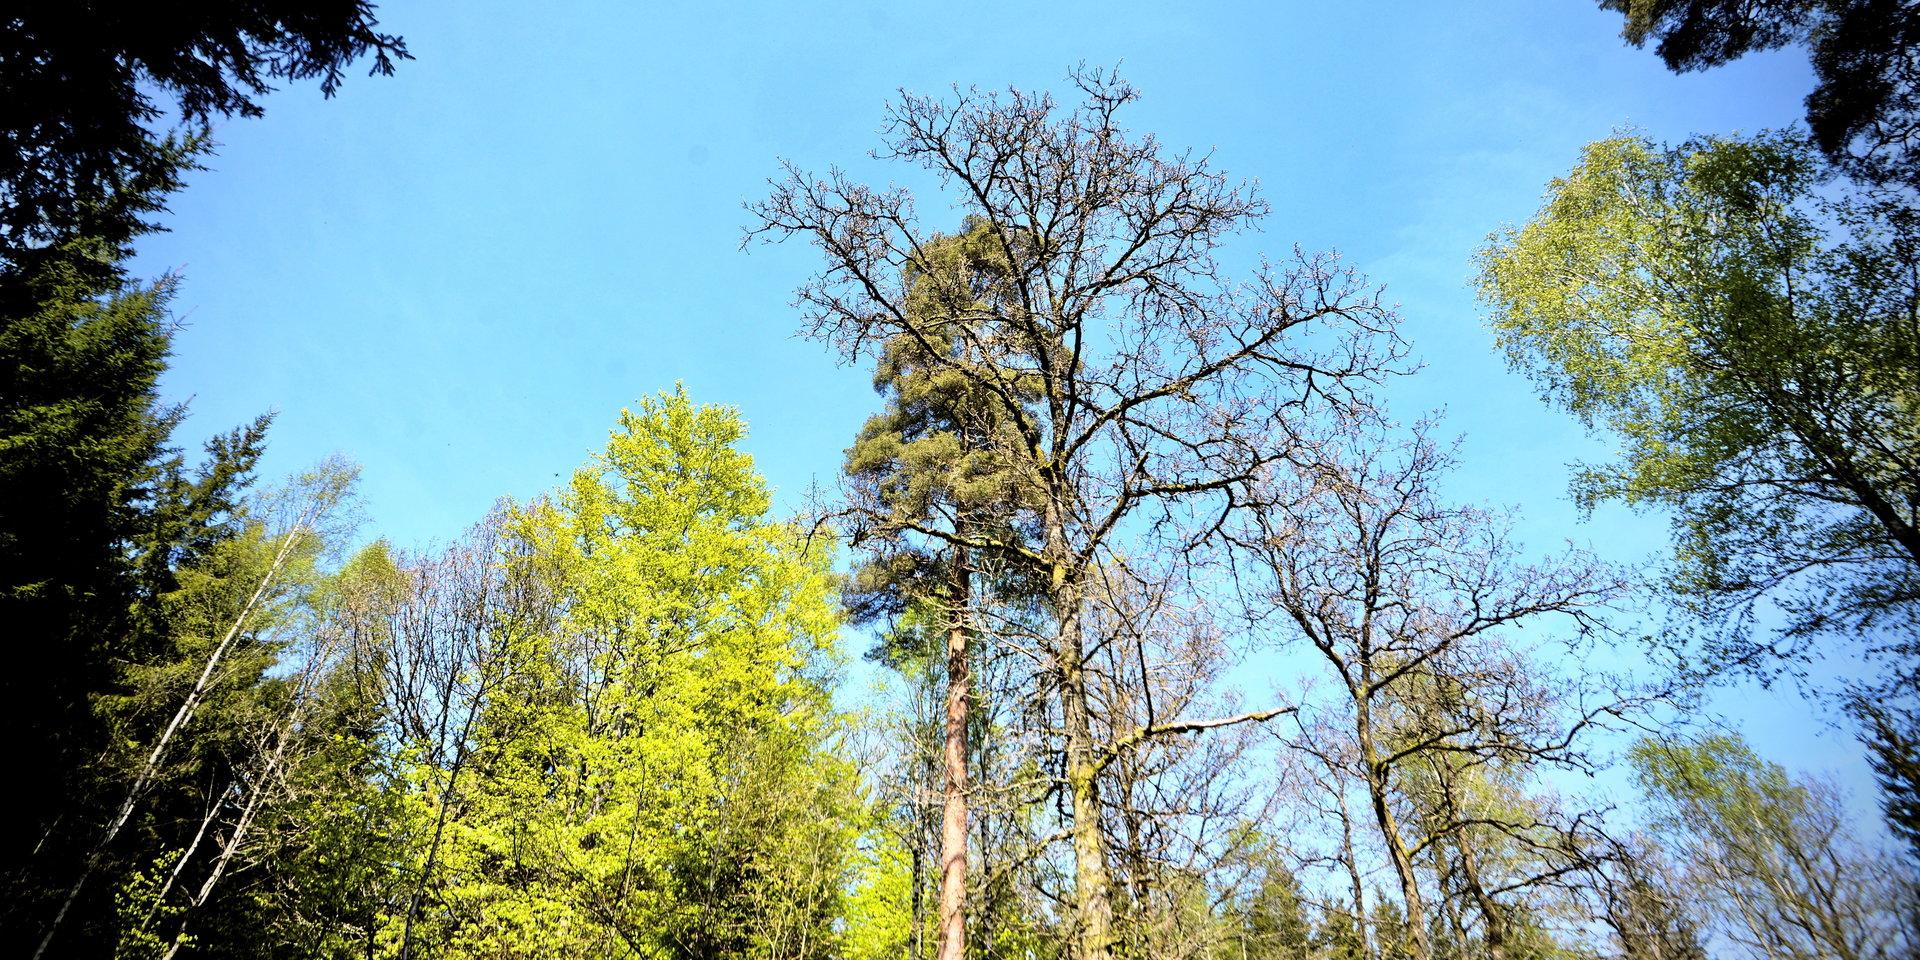 Högre temperaturer och granens utbredning sätter den svenska skogen i en farlig sits. Det är hög tid att klimatanpassa Västra Götalands skogar, skriver Skogssällskapet.